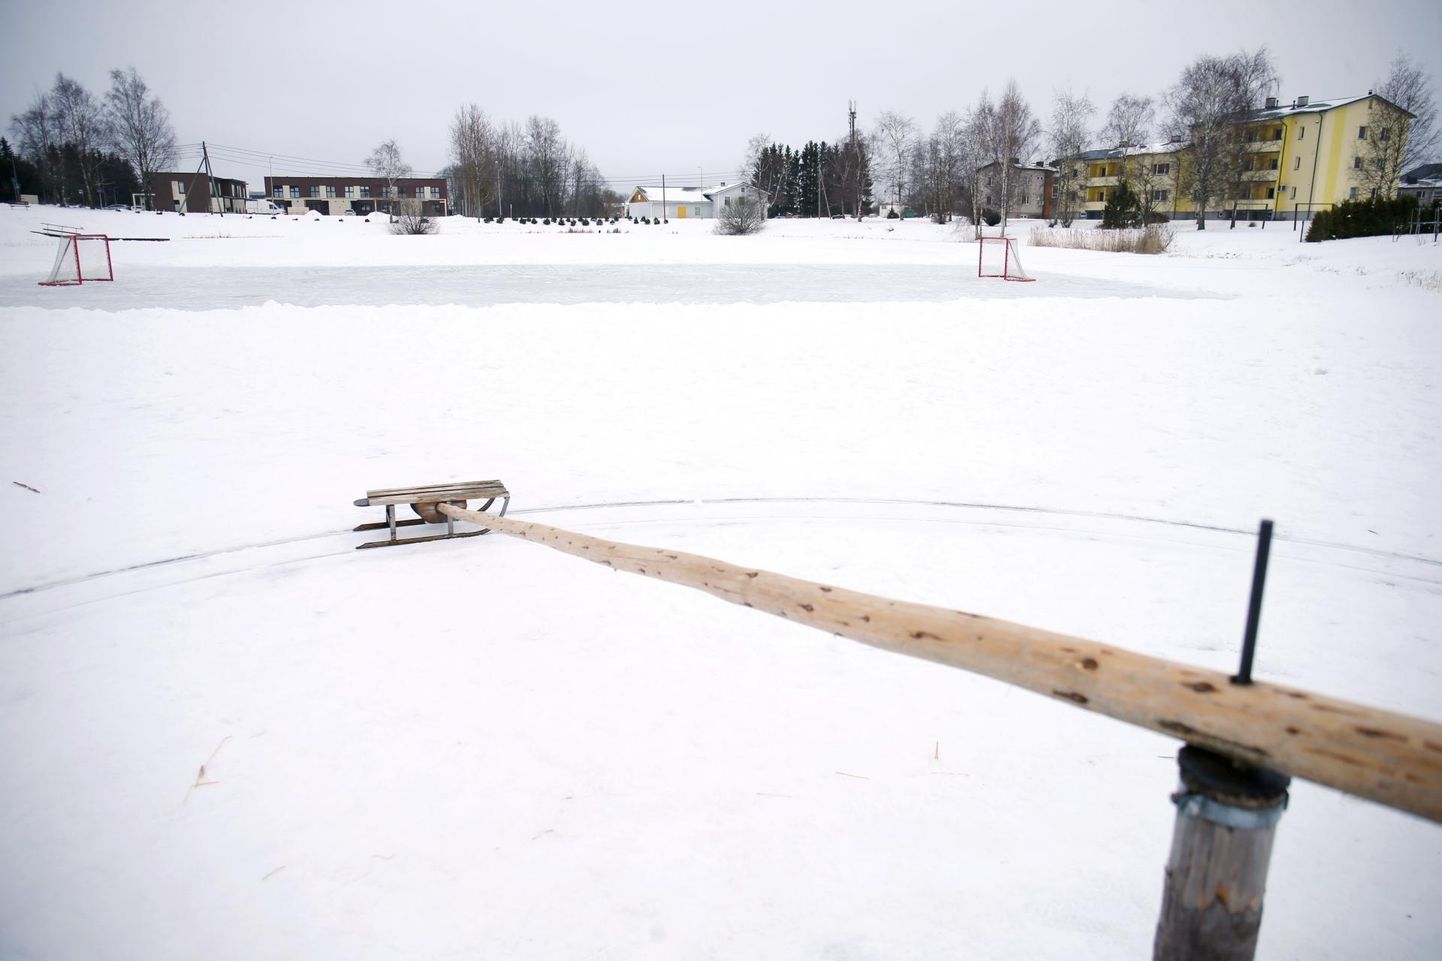 Kõrveküla järvel on ka väike jääkarussell, kui hoki mängimine ära tüütab.